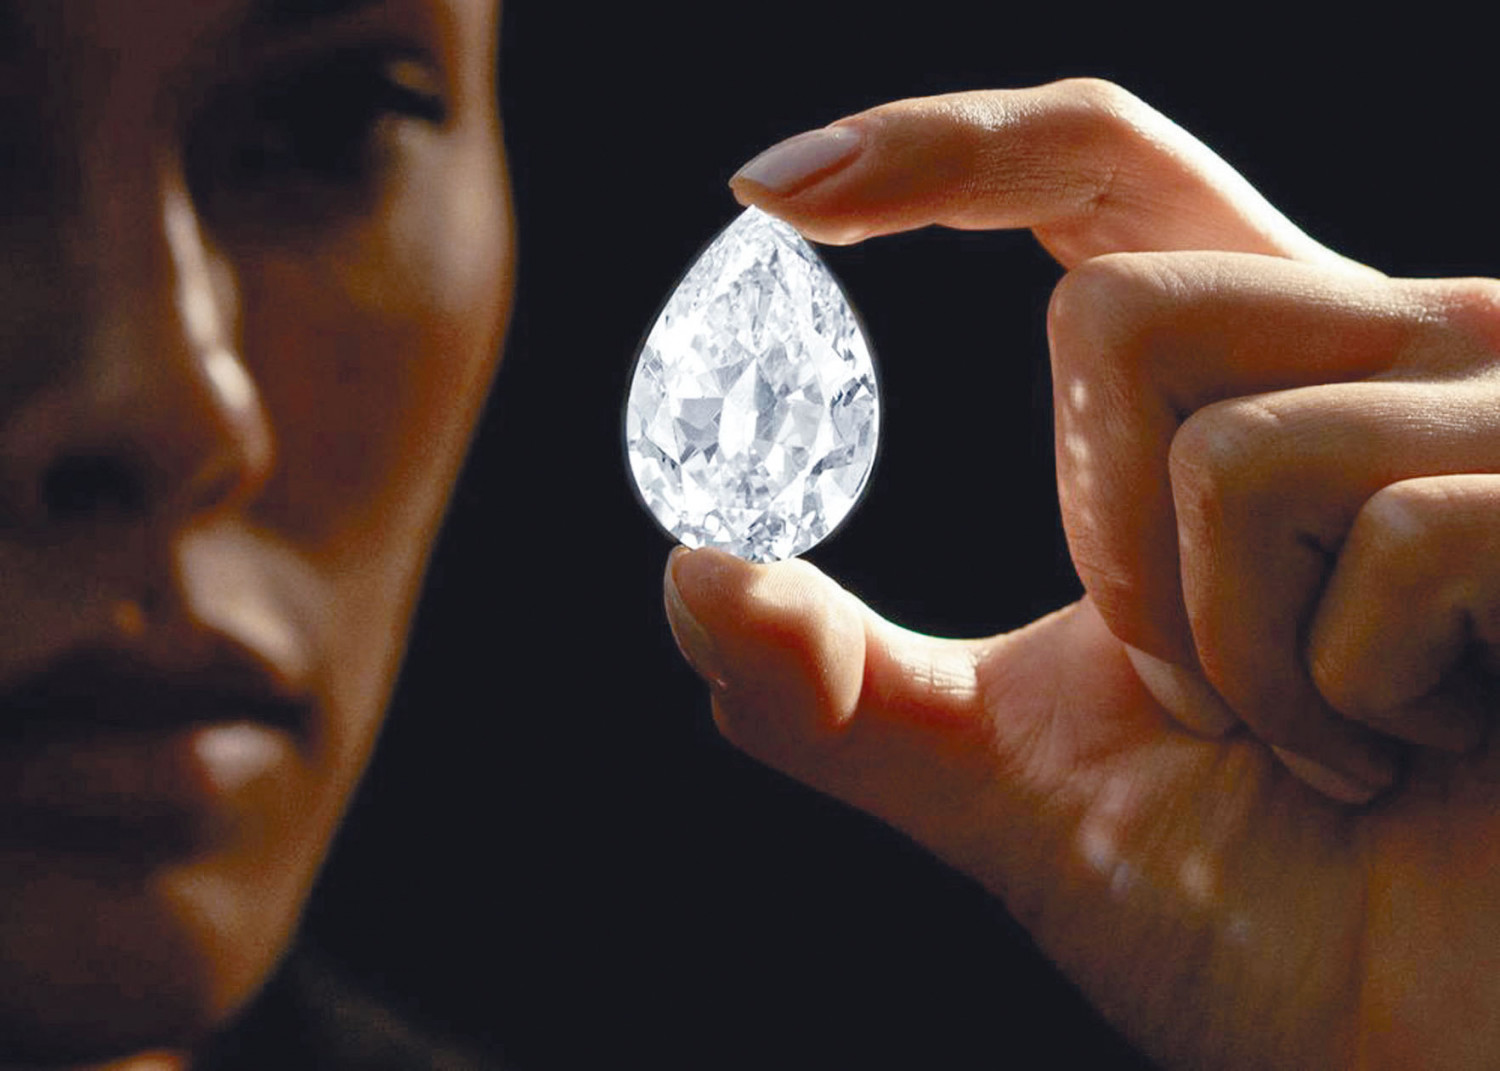 鑽石拍賣用虛幣競投近億成交創紀錄| 星島日報